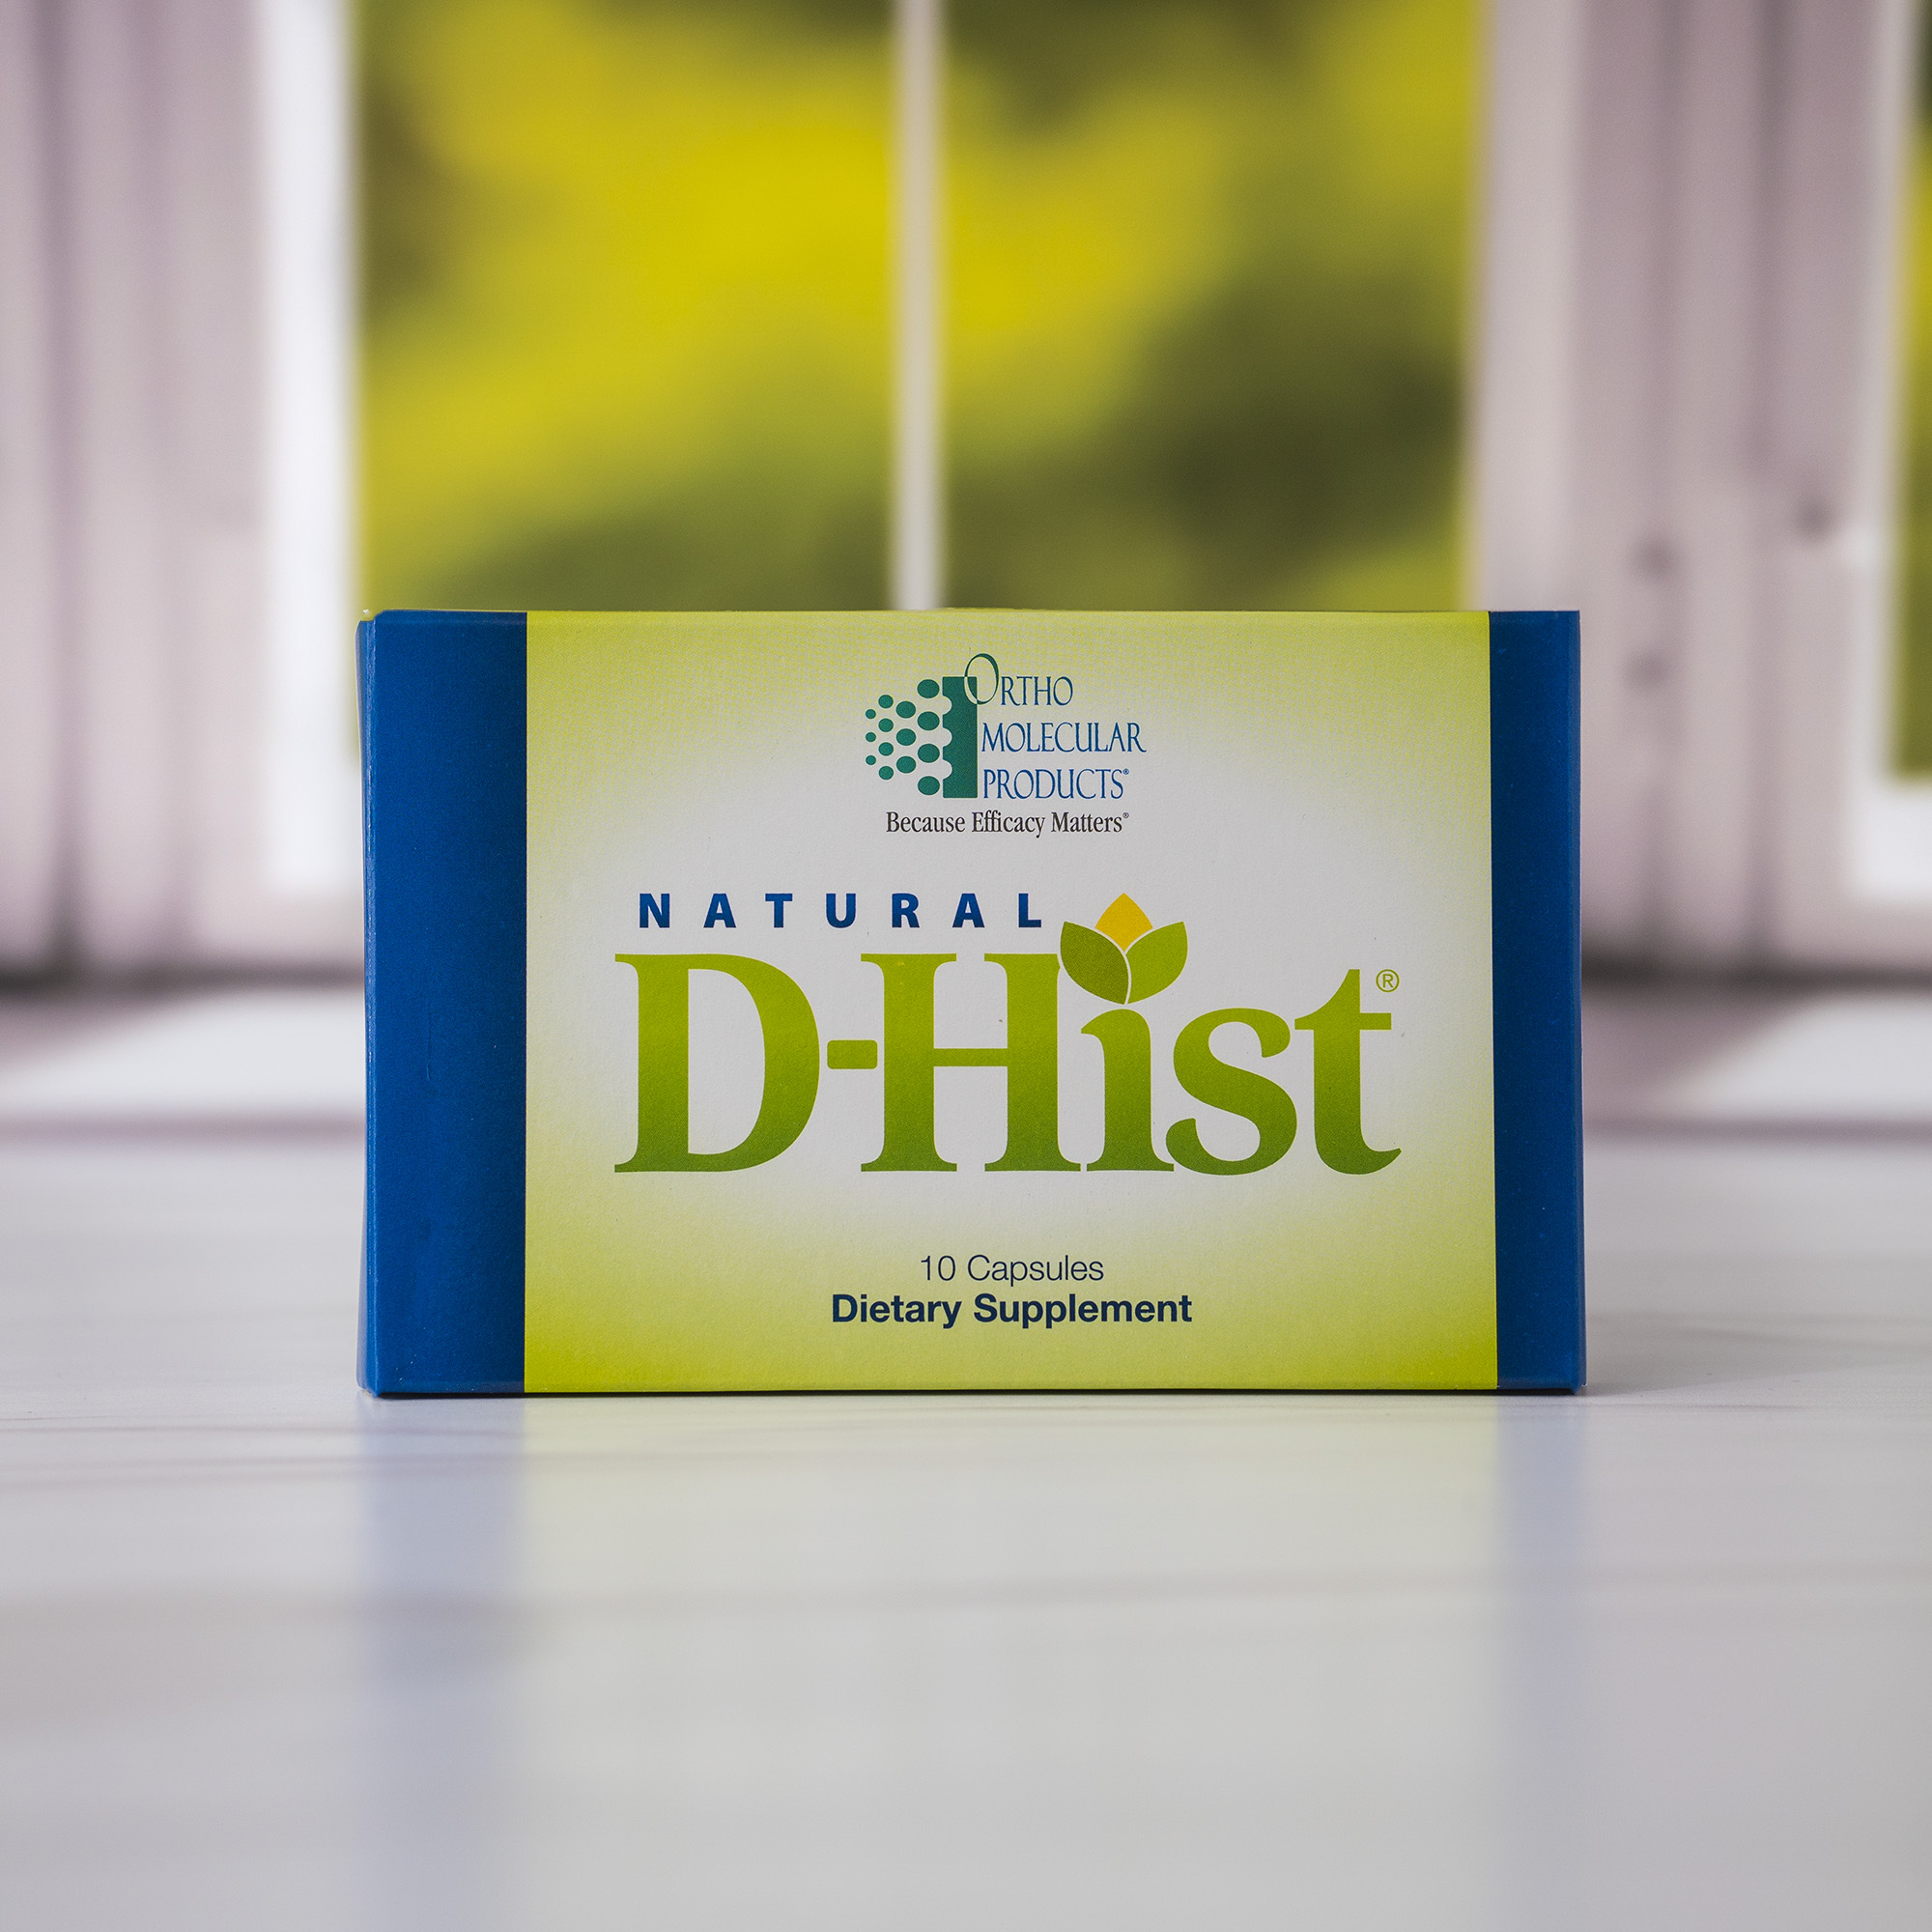 D-Hist